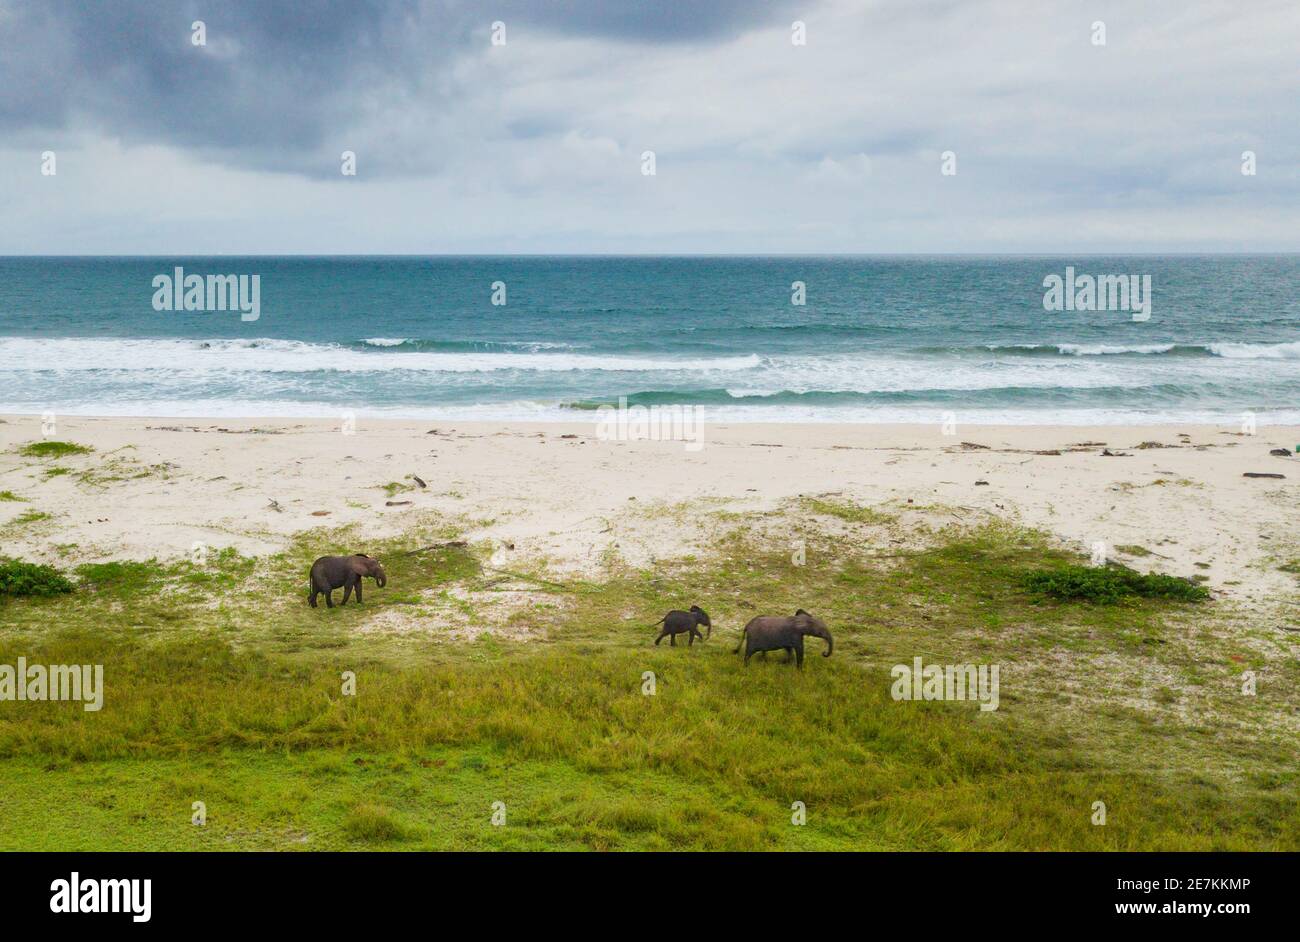 Groupe d'éléphants de forêt africains (Loxodonta cyclotis) à la plage, parc national de Loango, Gabon, Afrique centrale. Banque D'Images